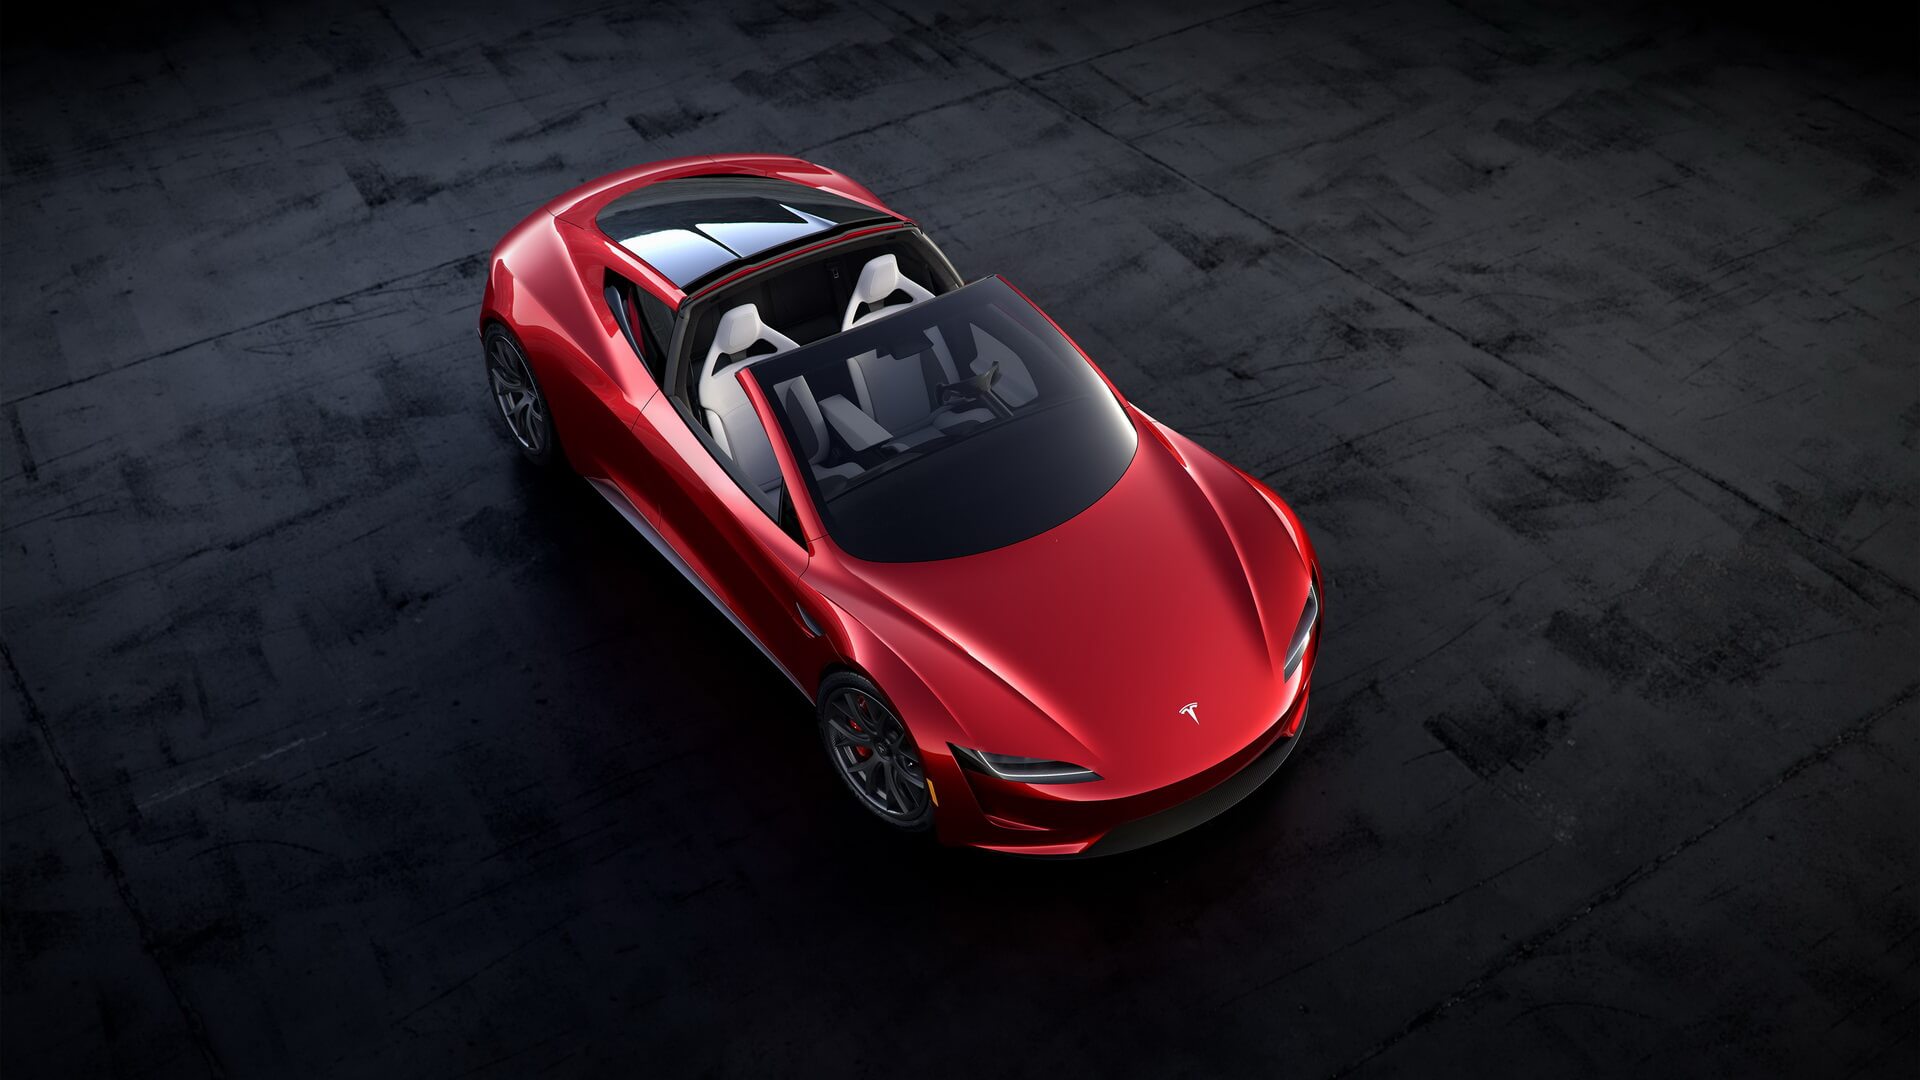 Спорткар Tesla Roadster со съемной панорамной крышей